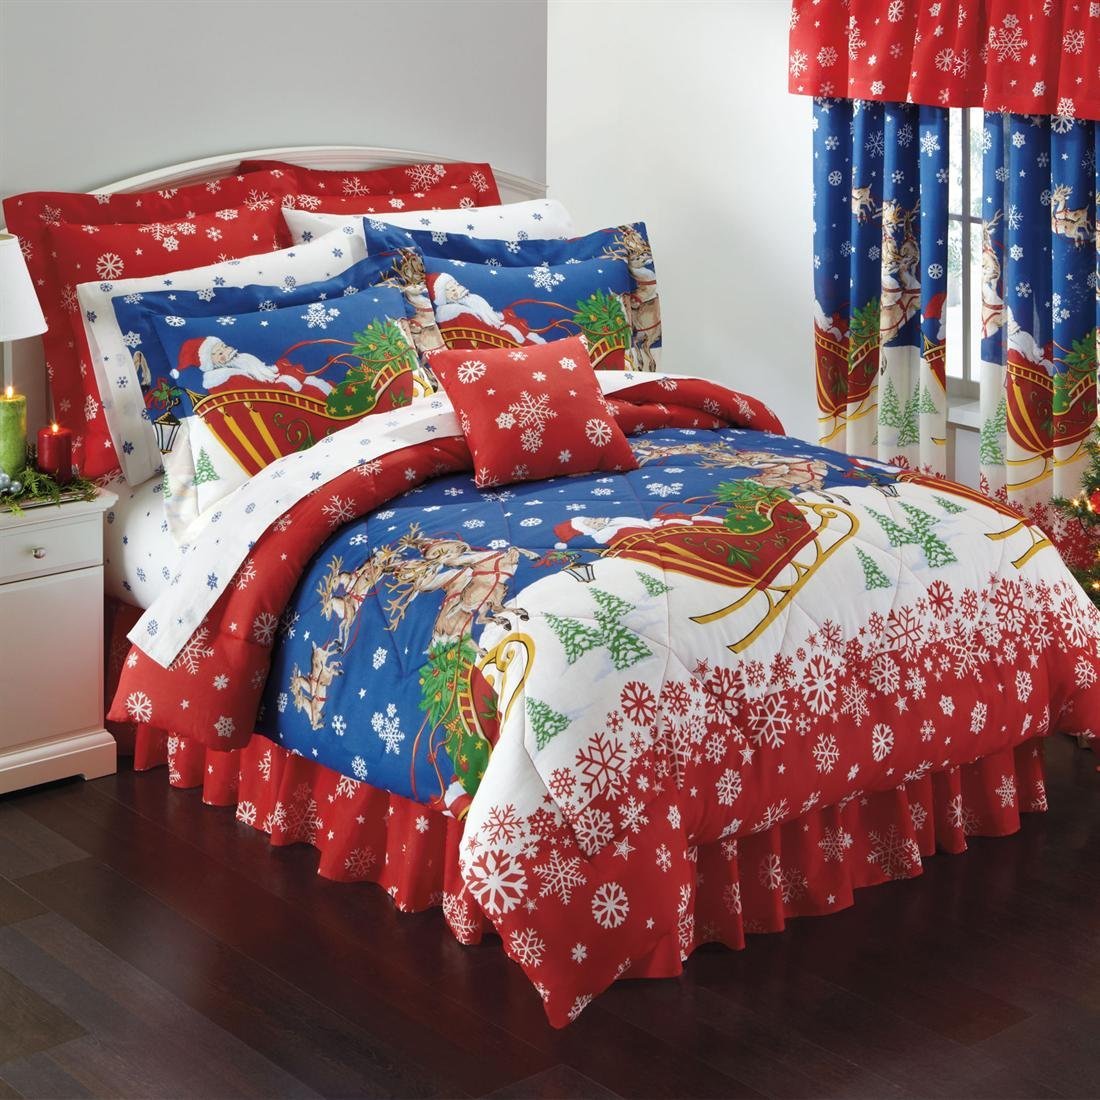 Christmas Bedding Comforter Set.